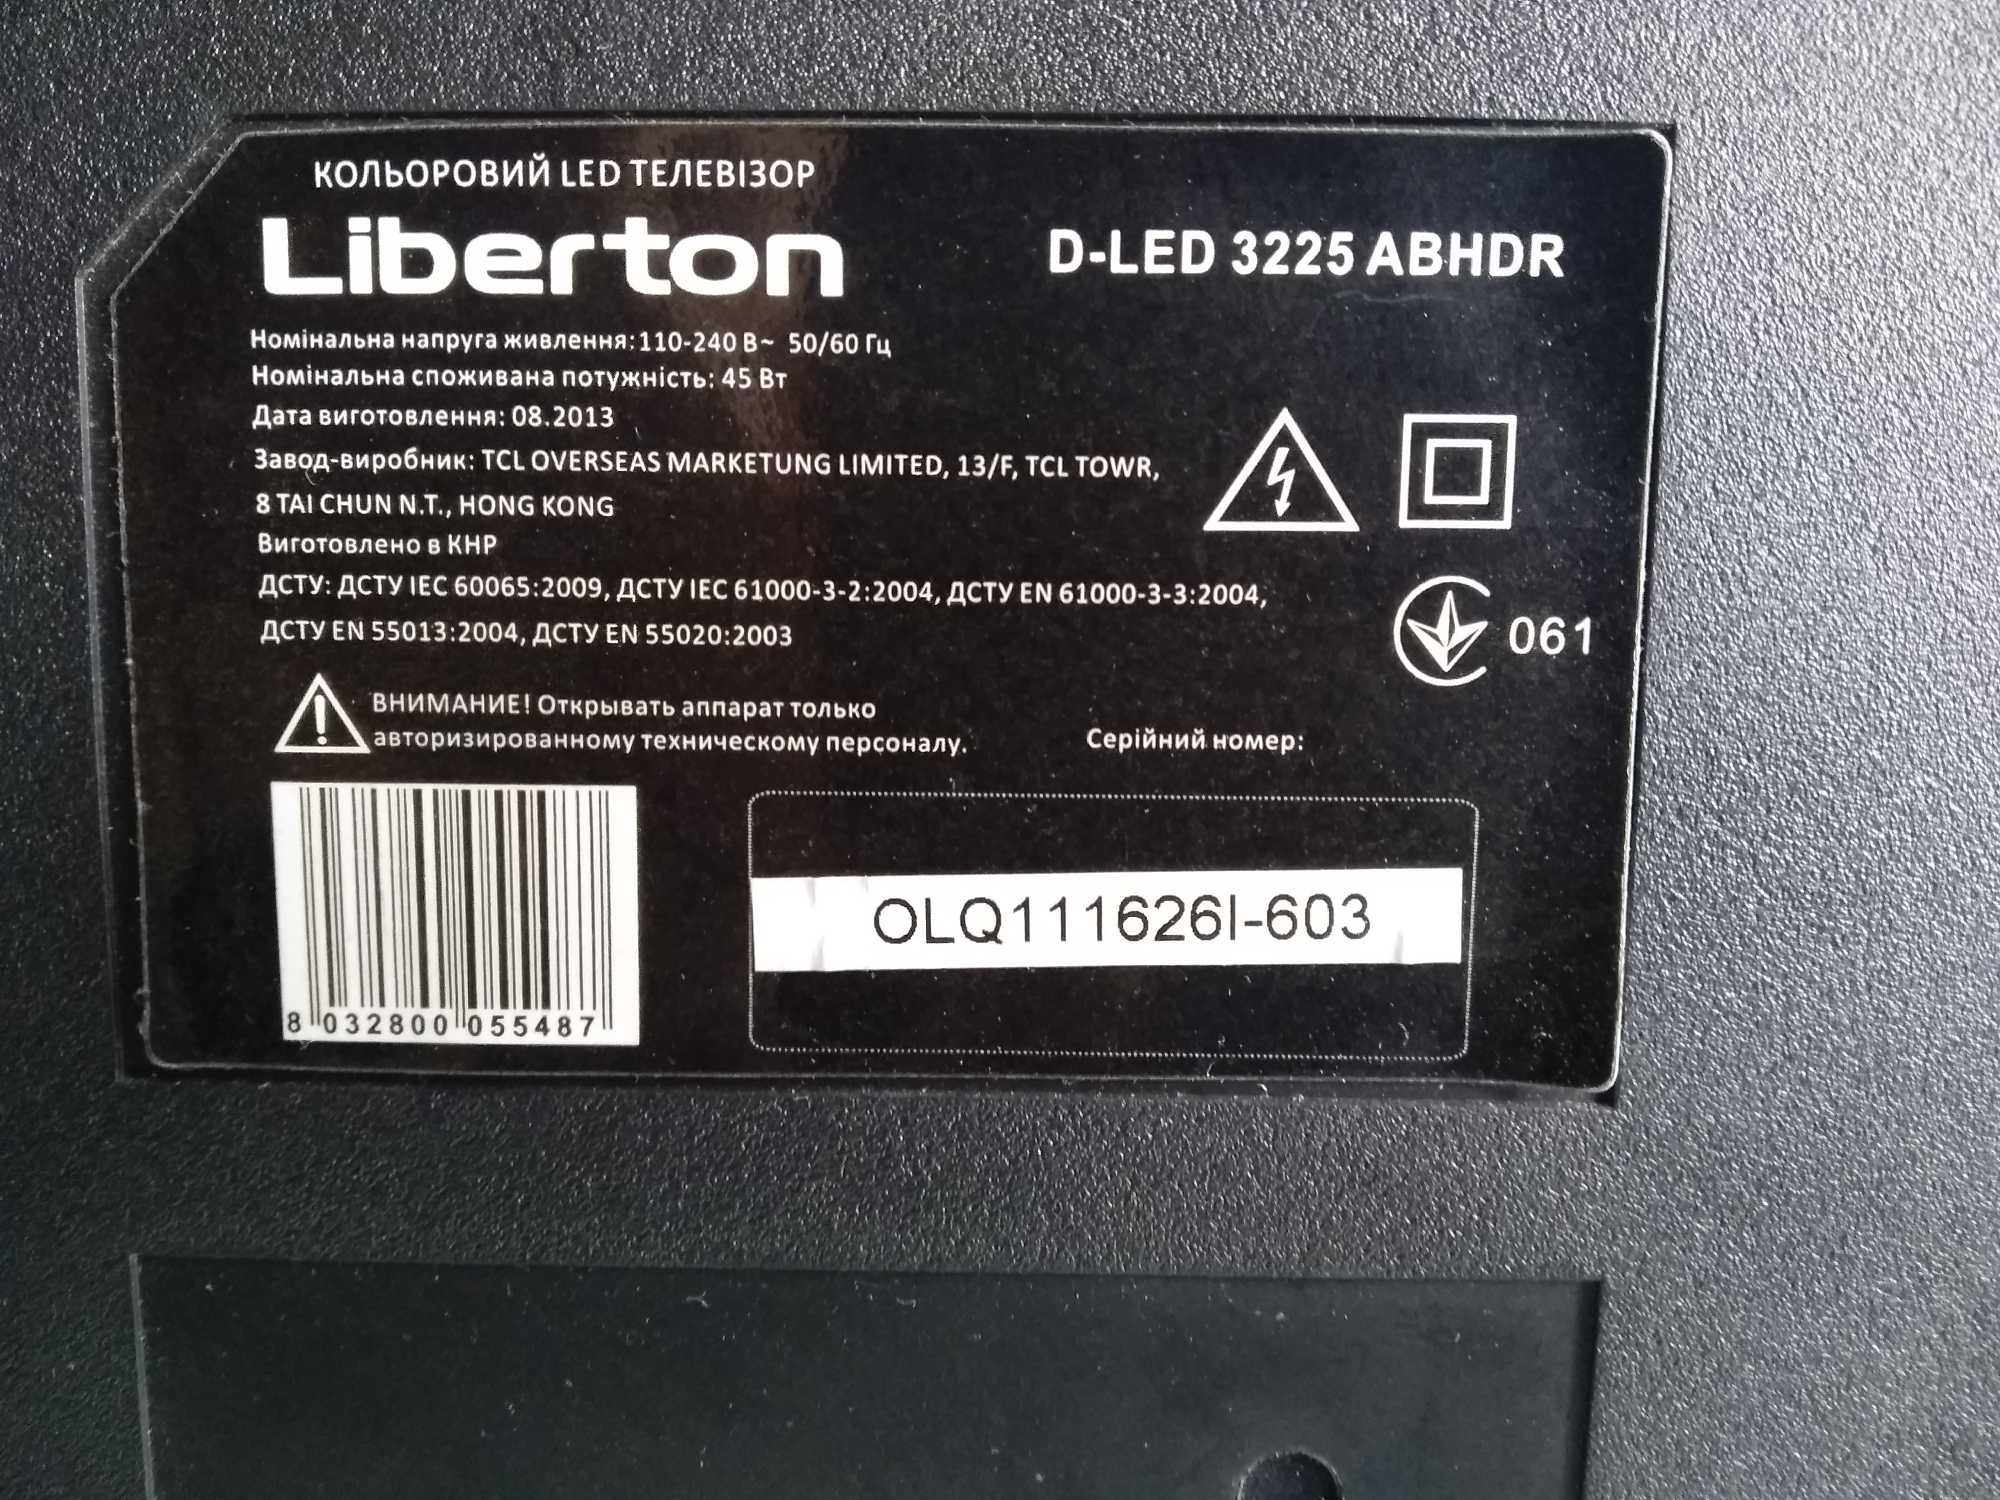 TV Libeton D-LED 3225 ABHDR main: TP.MS18VG.P77  MS82PT.